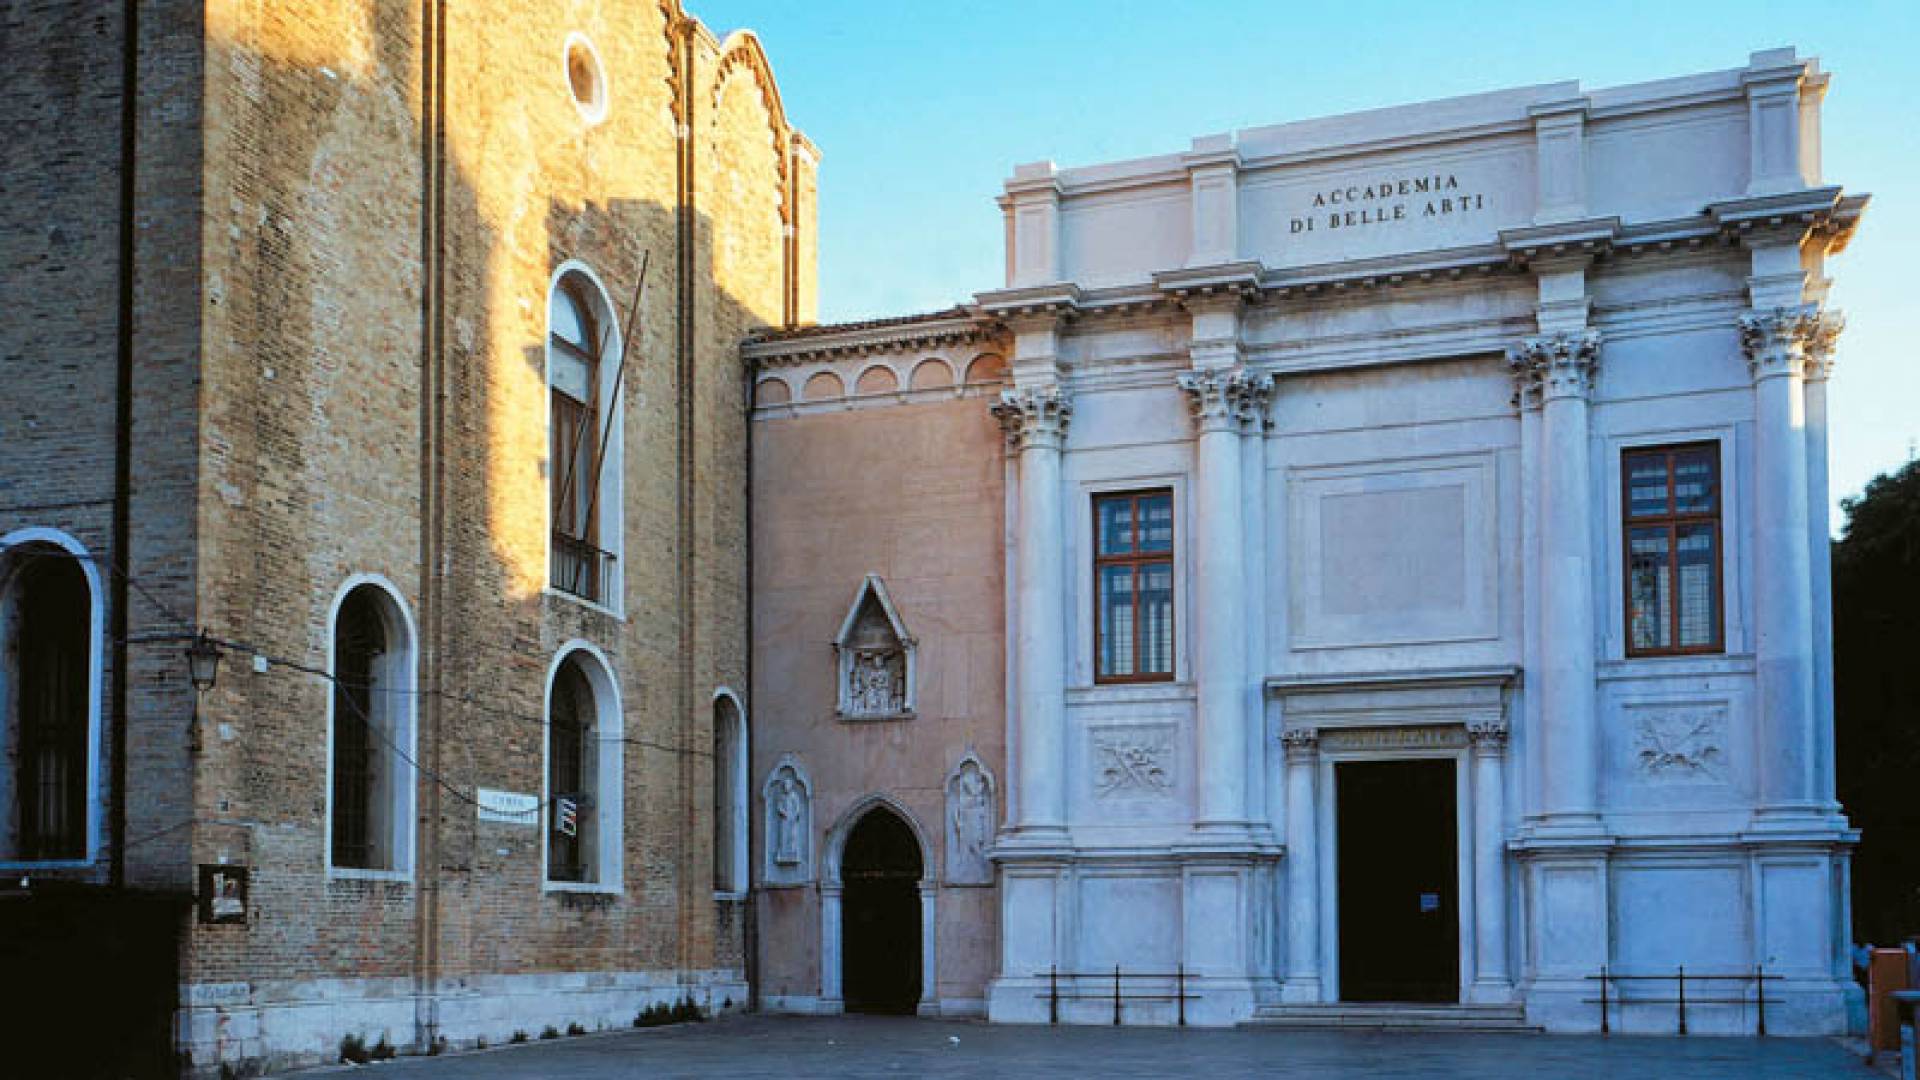 ACCADEMIA GALLERY, Scuola Della Carita'